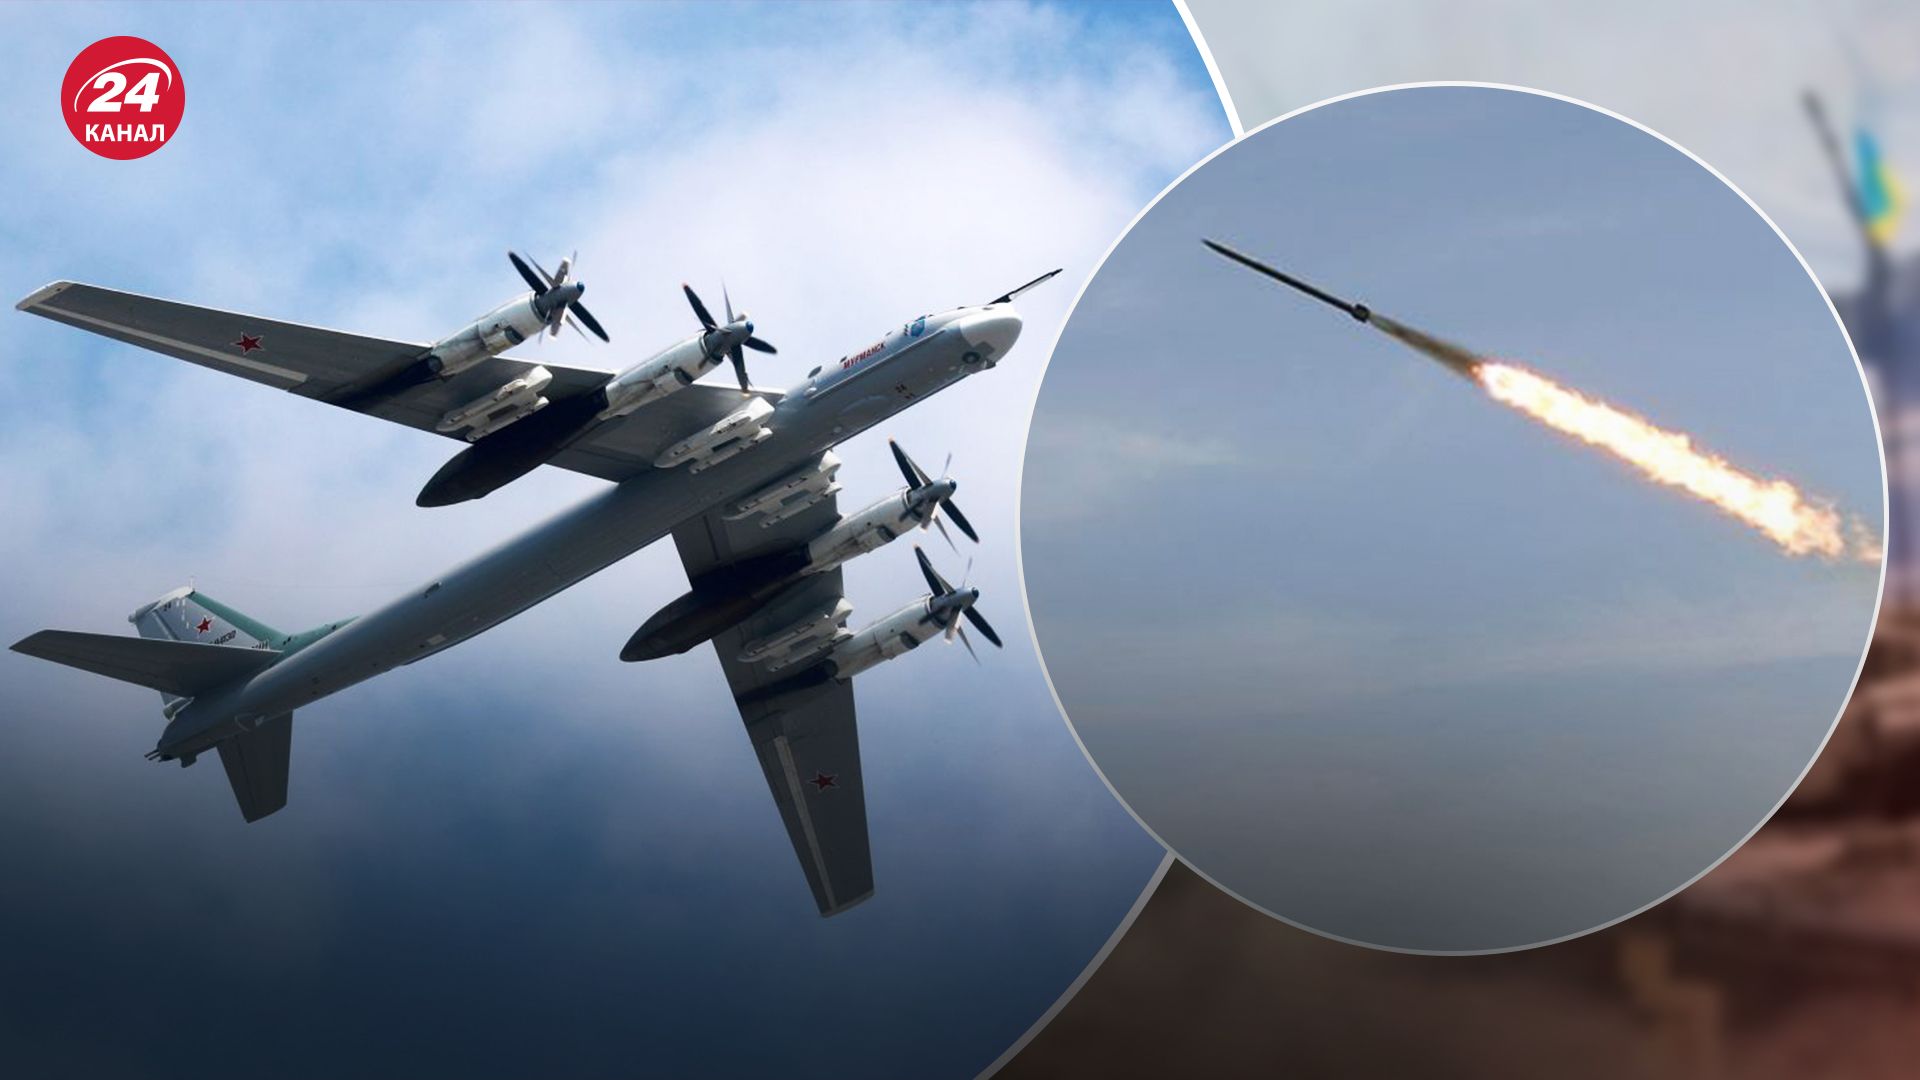 4 самолета Ту-95МС активны в небе в России